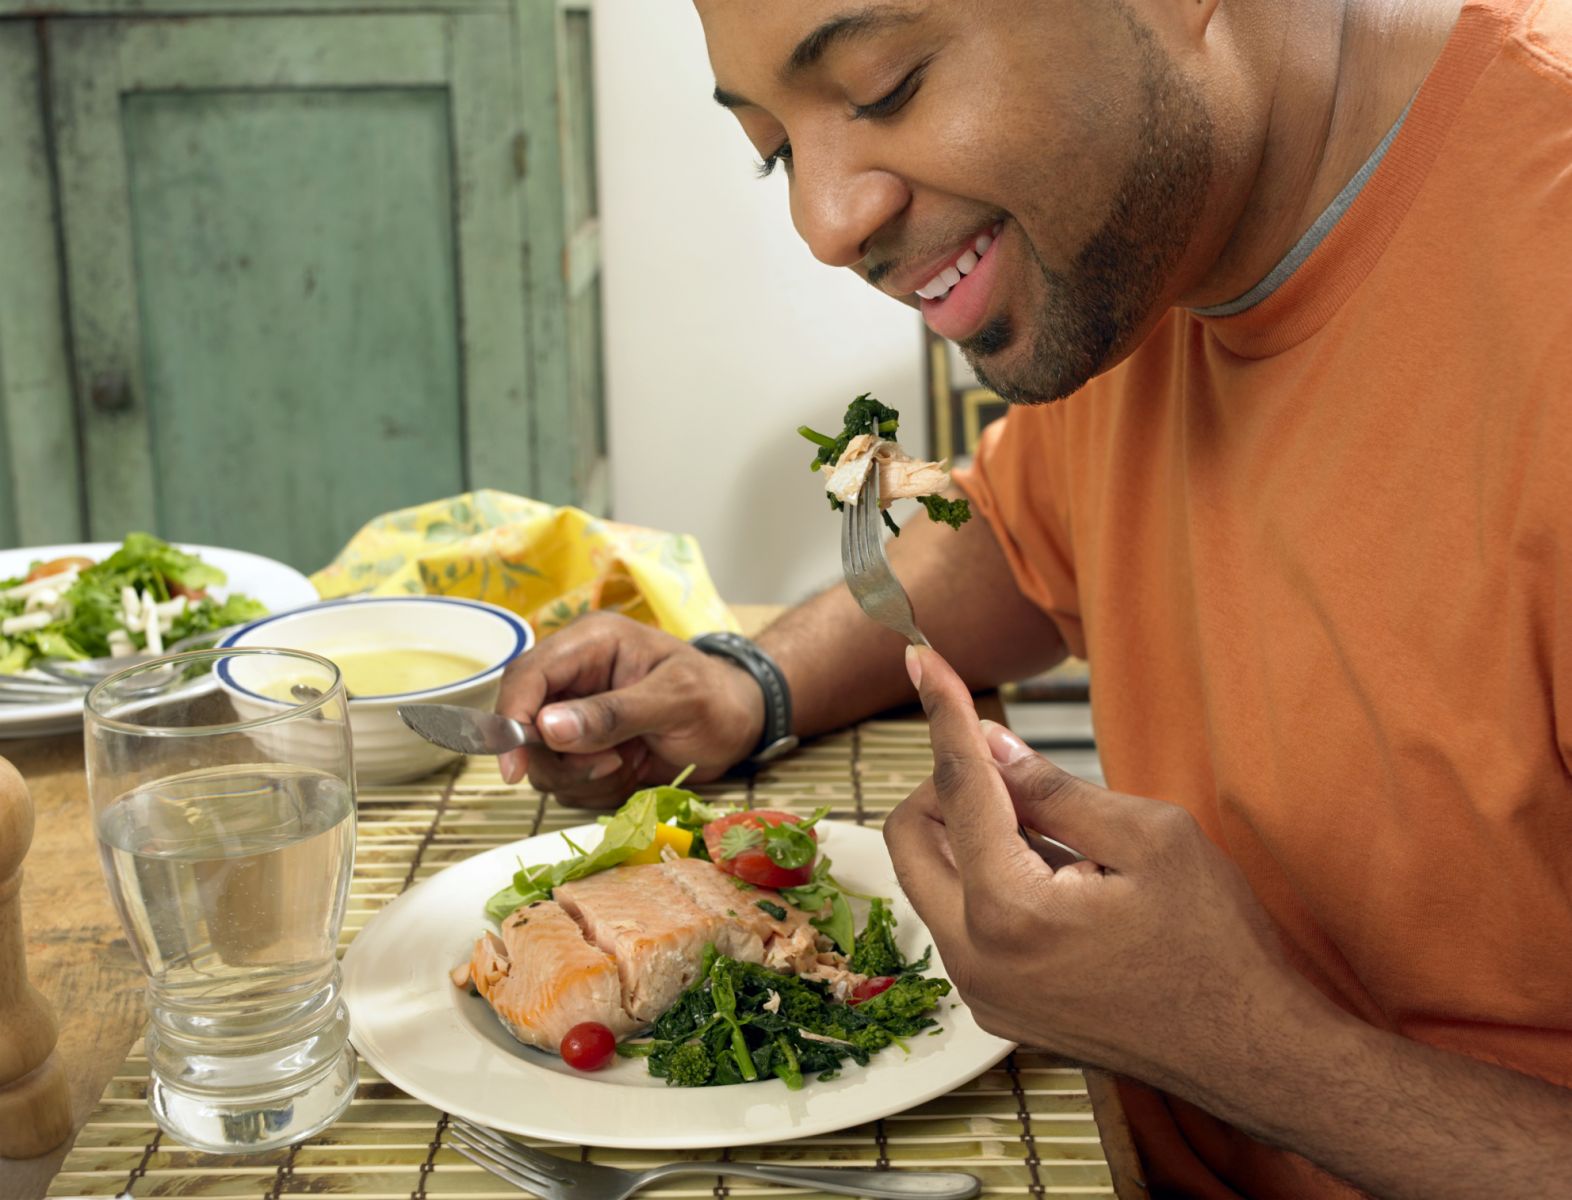  Mann som spiser laks, en god kilde til hjertebeskyttende omega-3 fettsyre